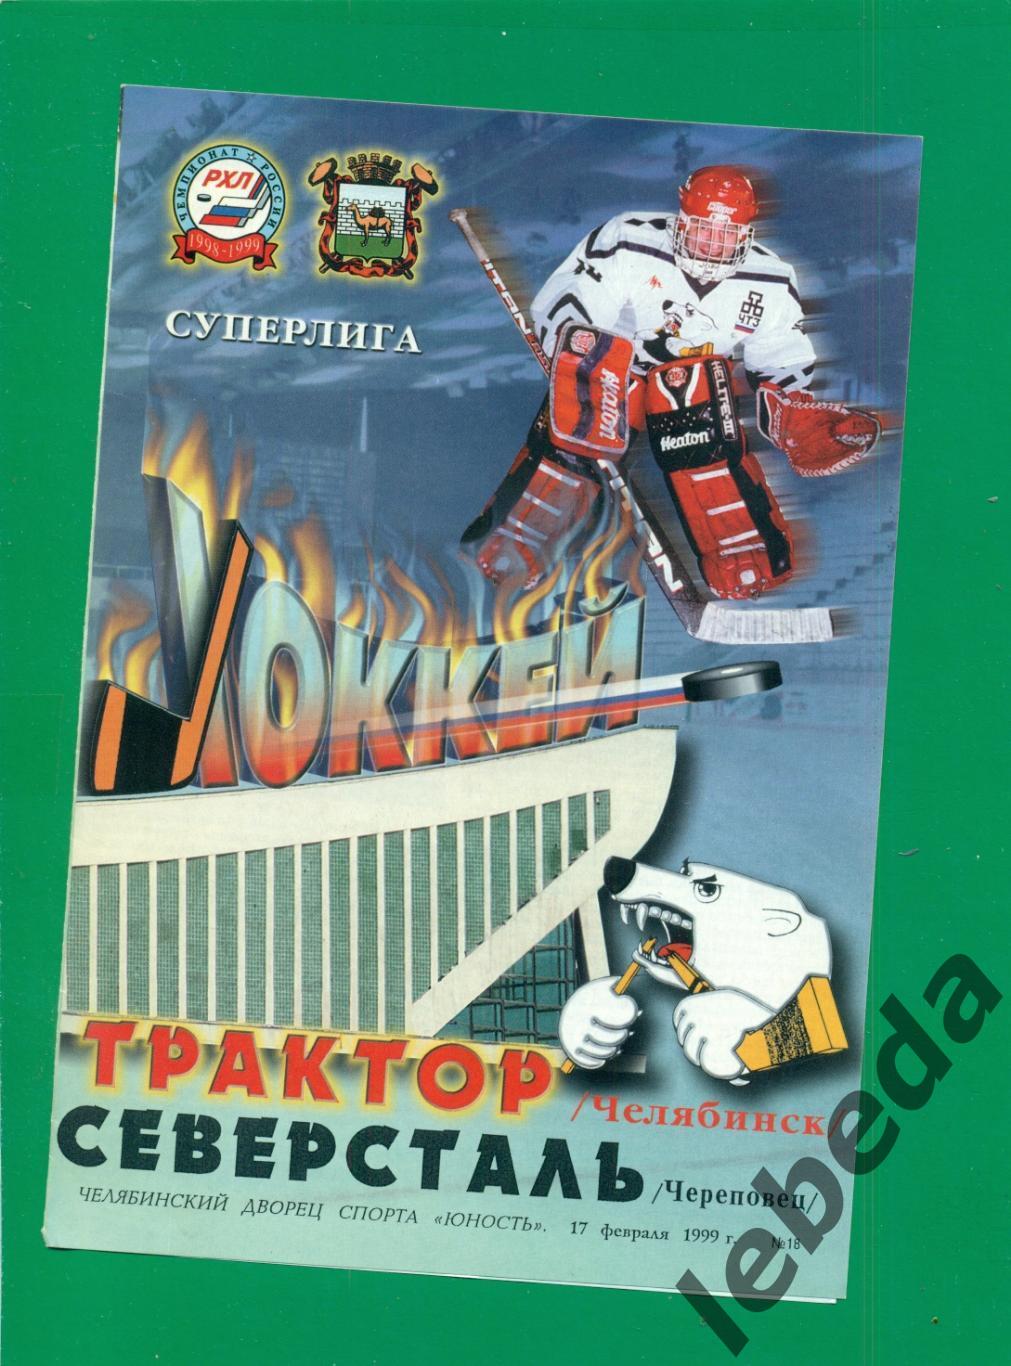 Трактор Челябинск - Северсталь Чеоеповец - 1998 / 1999 г. (17.02.1999.)